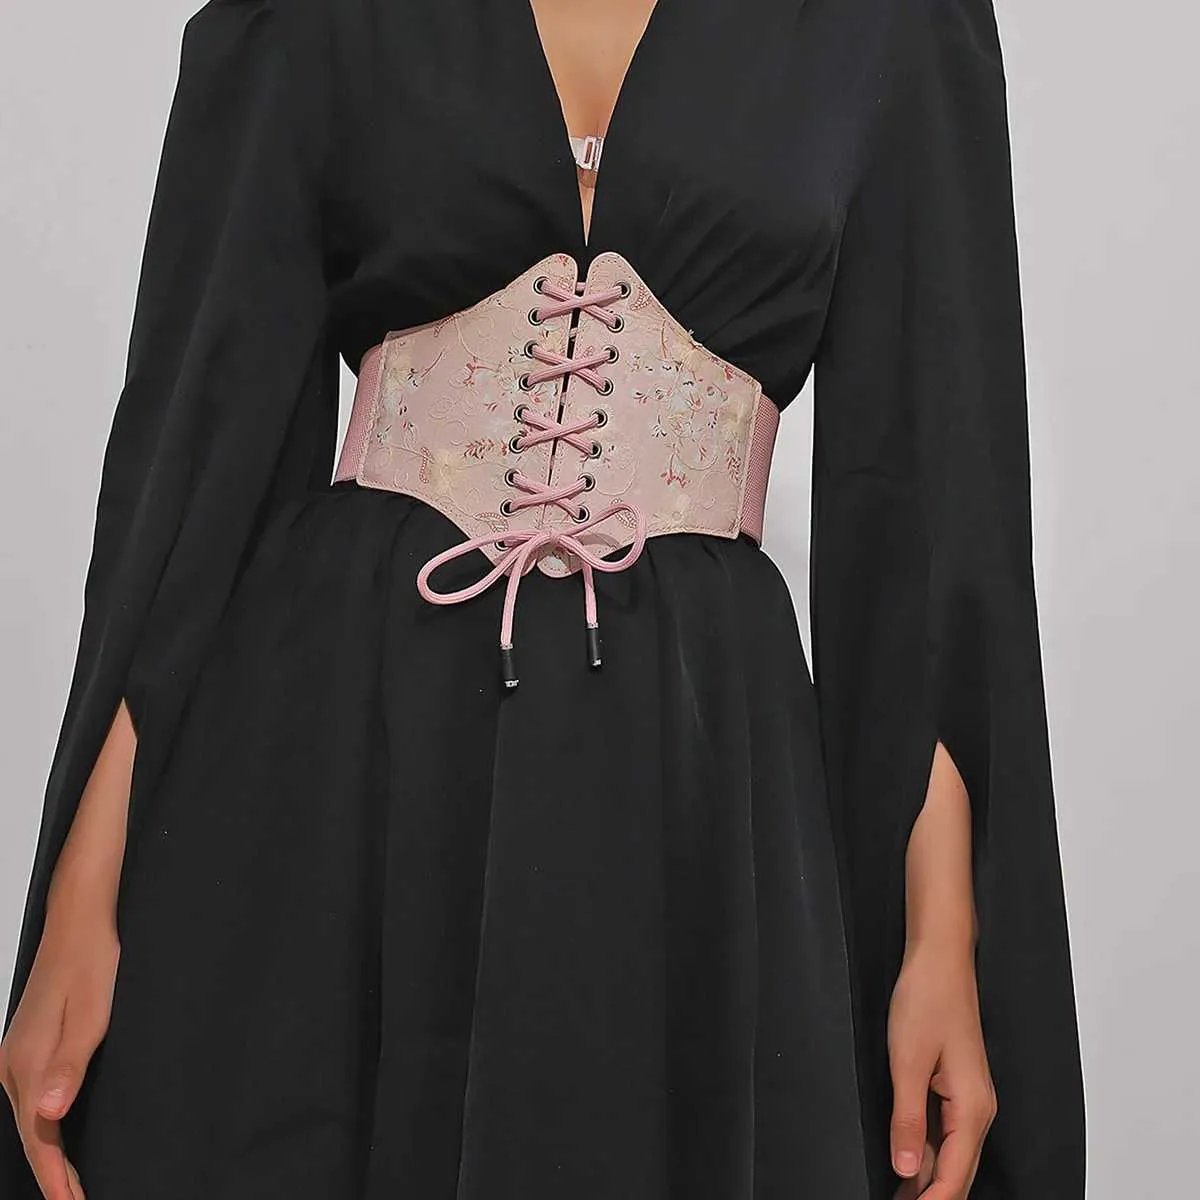 Gürtel weibliche rosa Korsett schüre Wide Taillengürtel Fashion Magic Tape Bandage Spitze Seil Binde Vintage Kleidergürtel